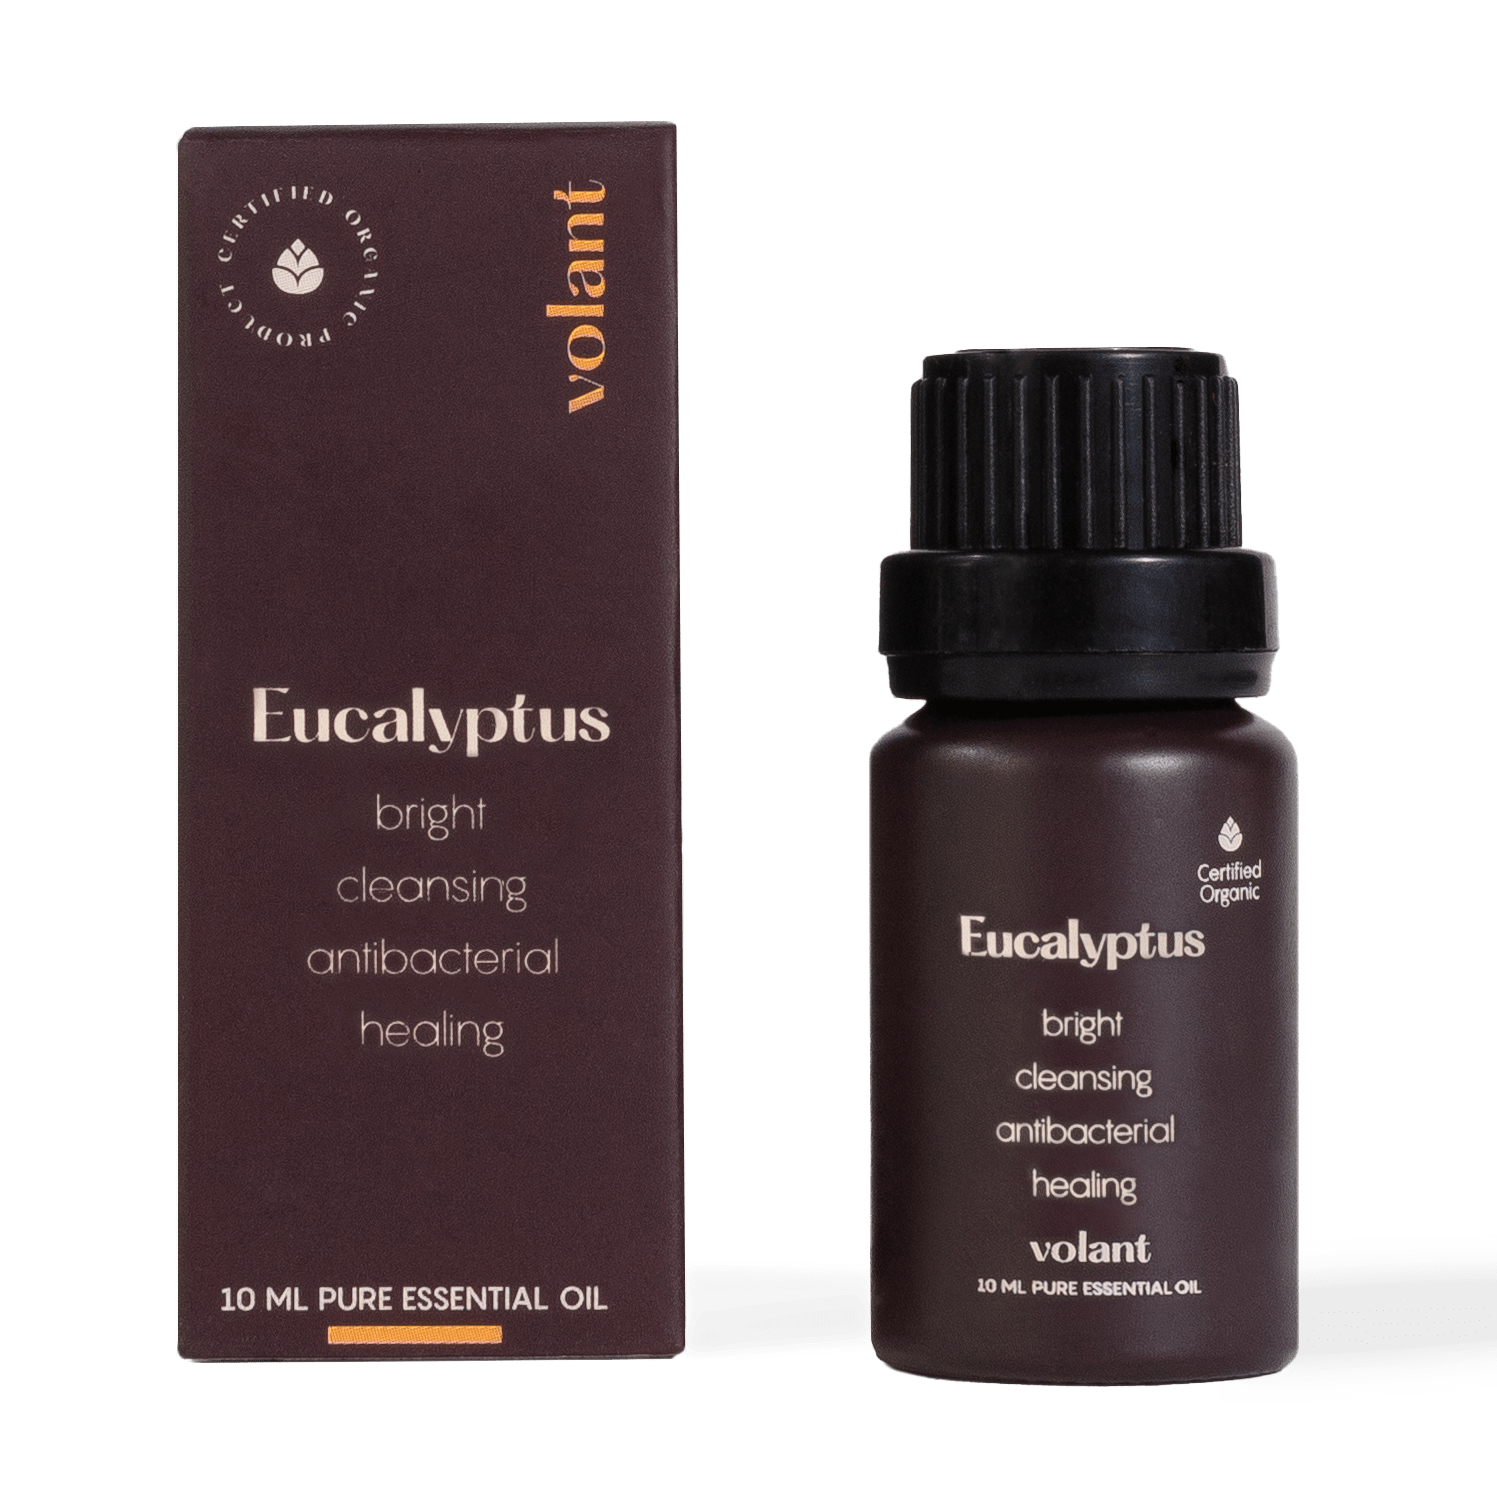 volant økologisk eukalyptus æterisk olie flaskeemballage til at lindre tilstoppet næse